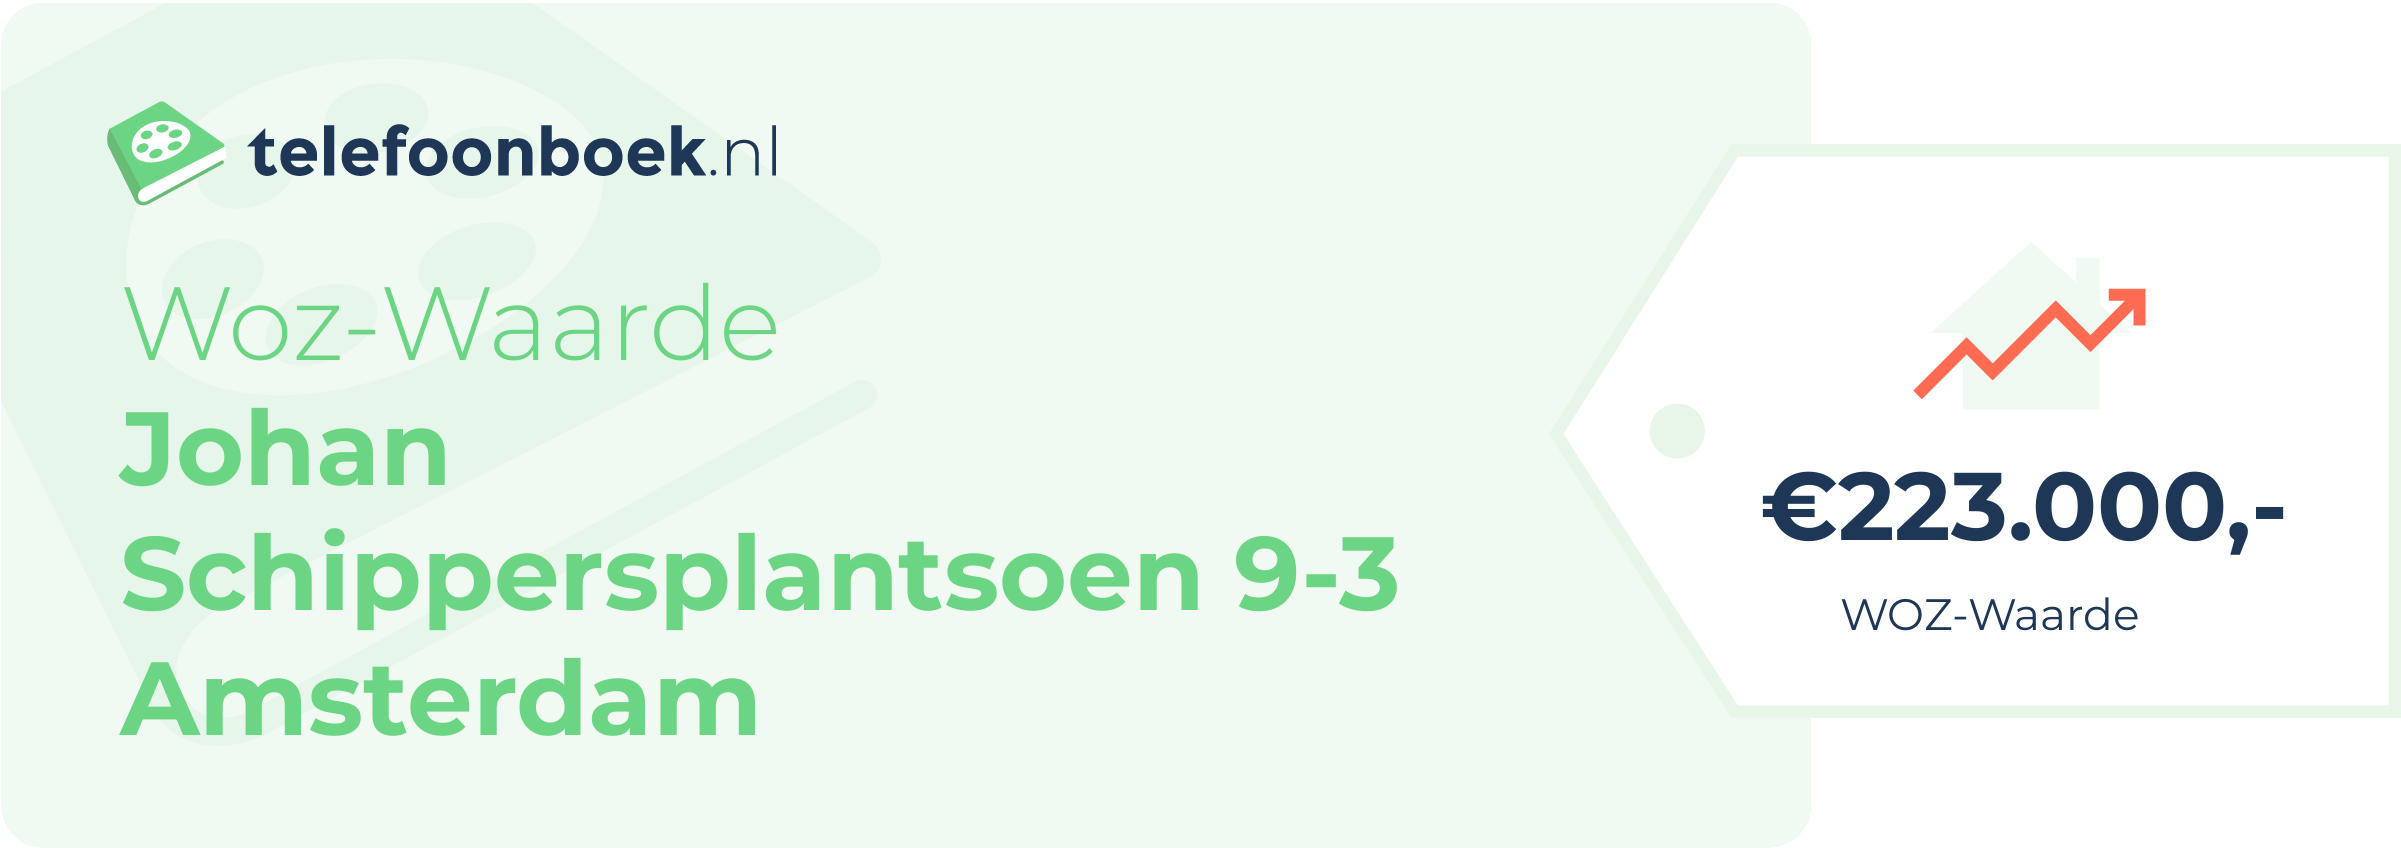 WOZ-waarde Johan Schippersplantsoen 9-3 Amsterdam